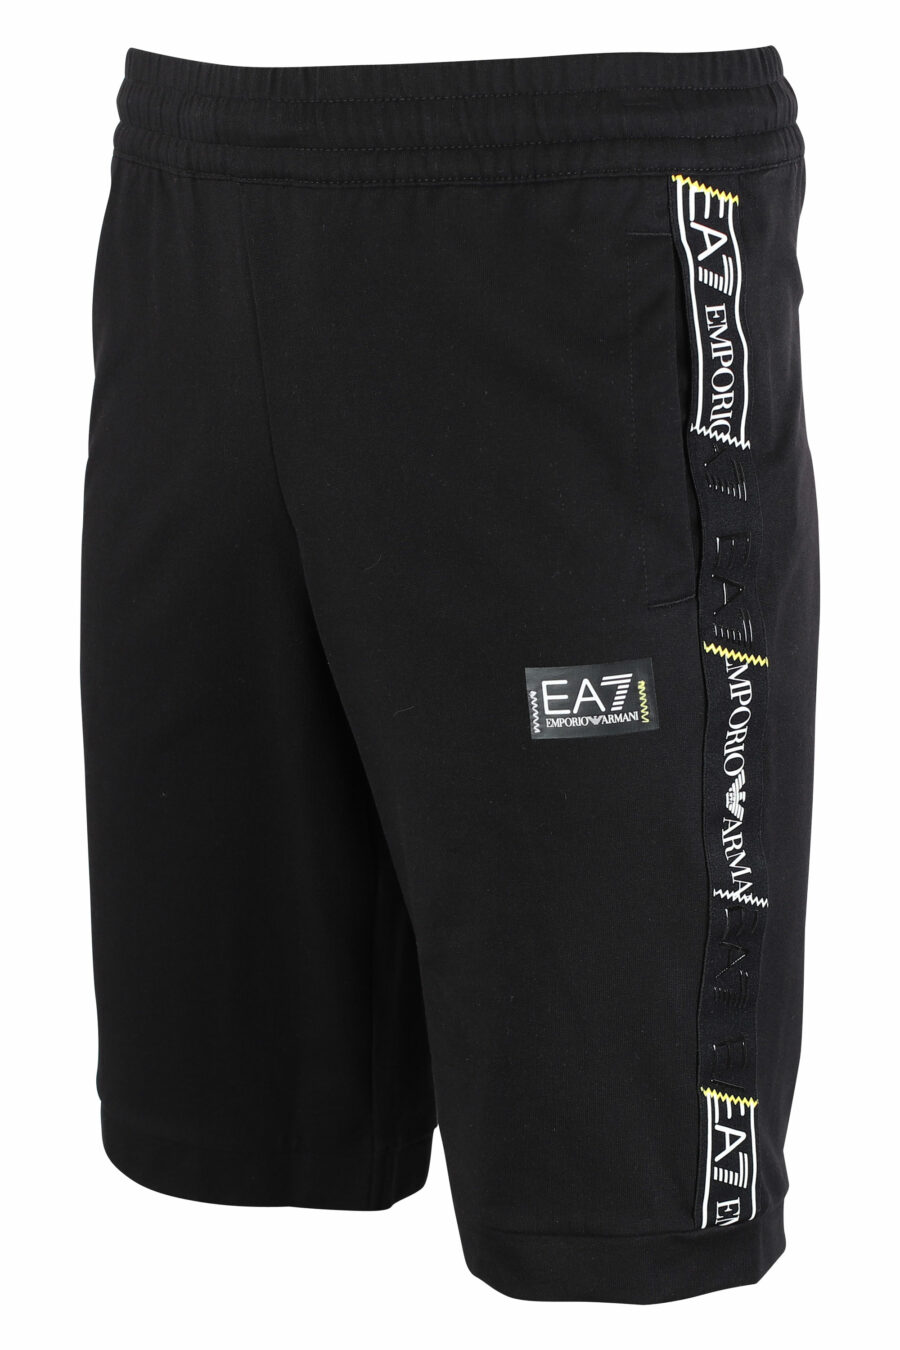 Pantalón de chándal negro corto con logo en cinta laterales - IMG 9505